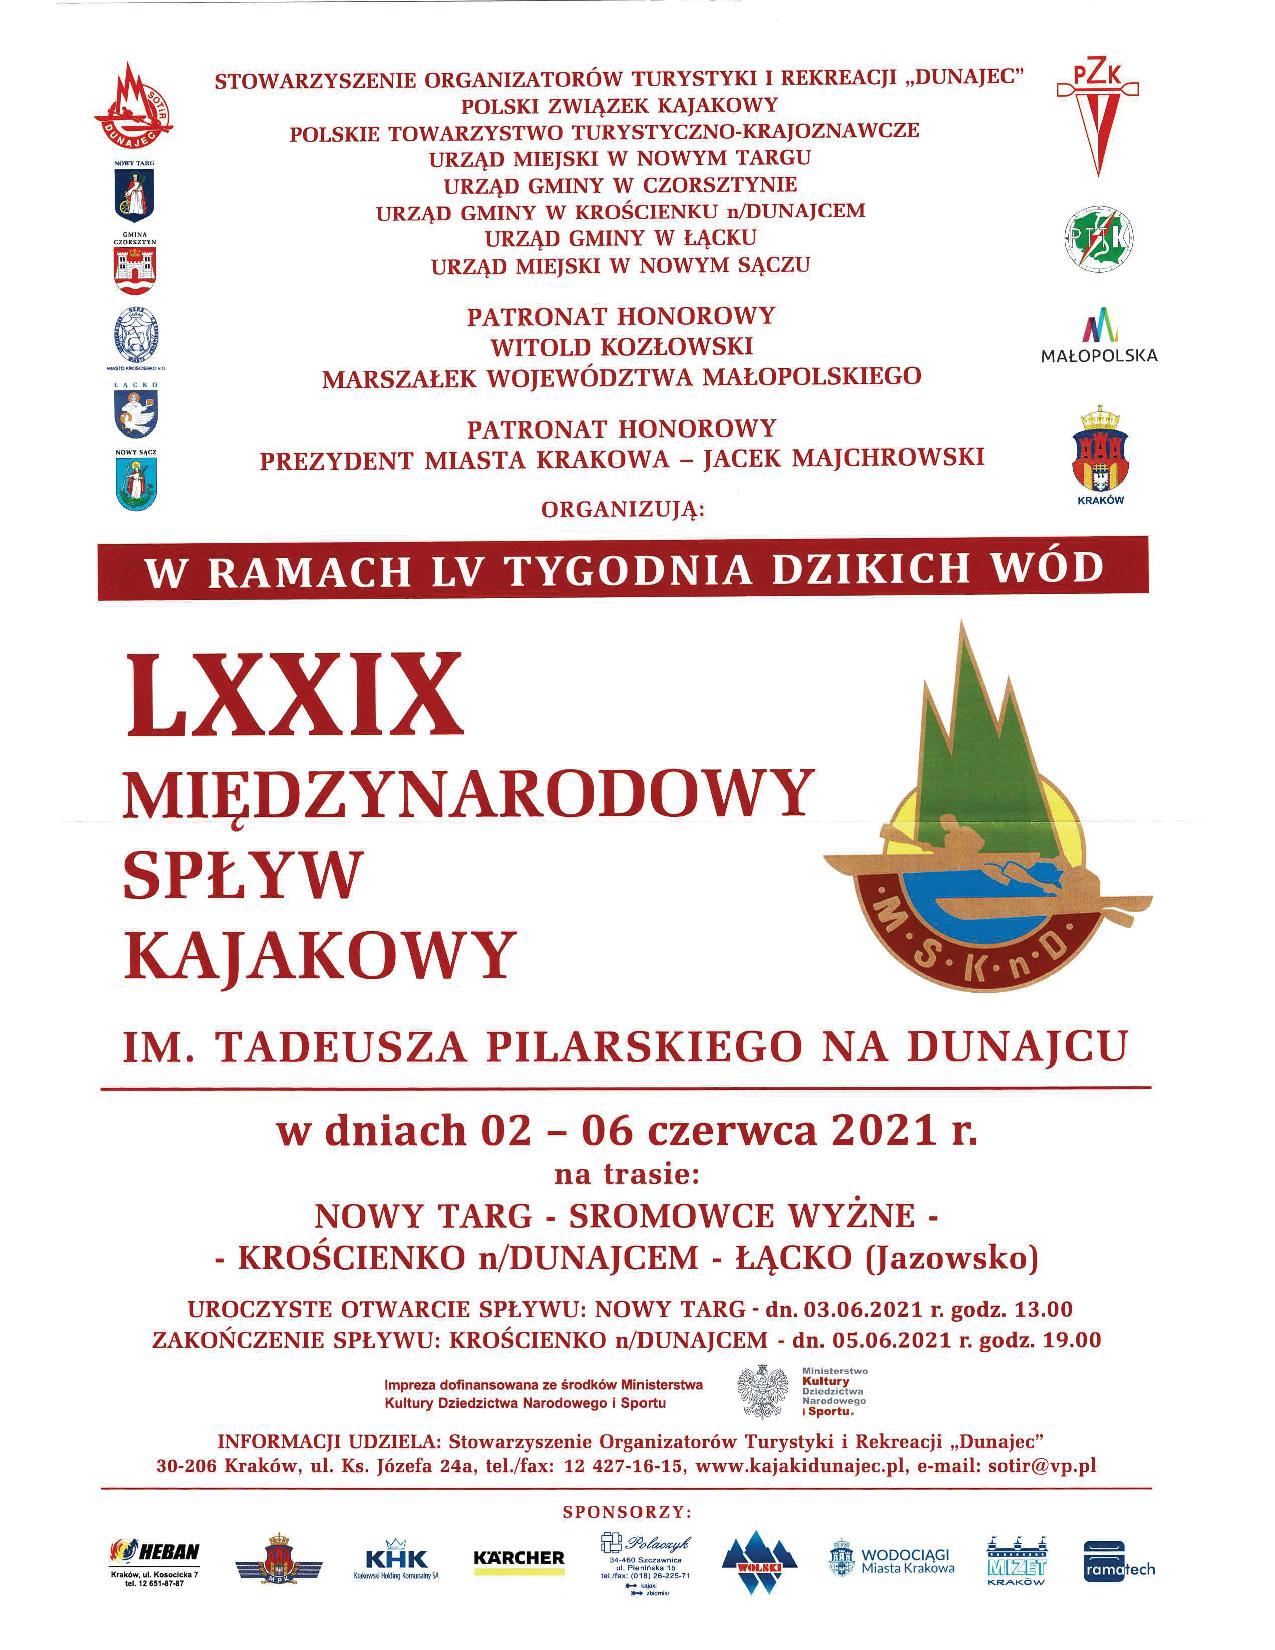 LXXIX Międzynarodowy Spływ Kajakowy im. T. Pilarskiego na Dunajcu